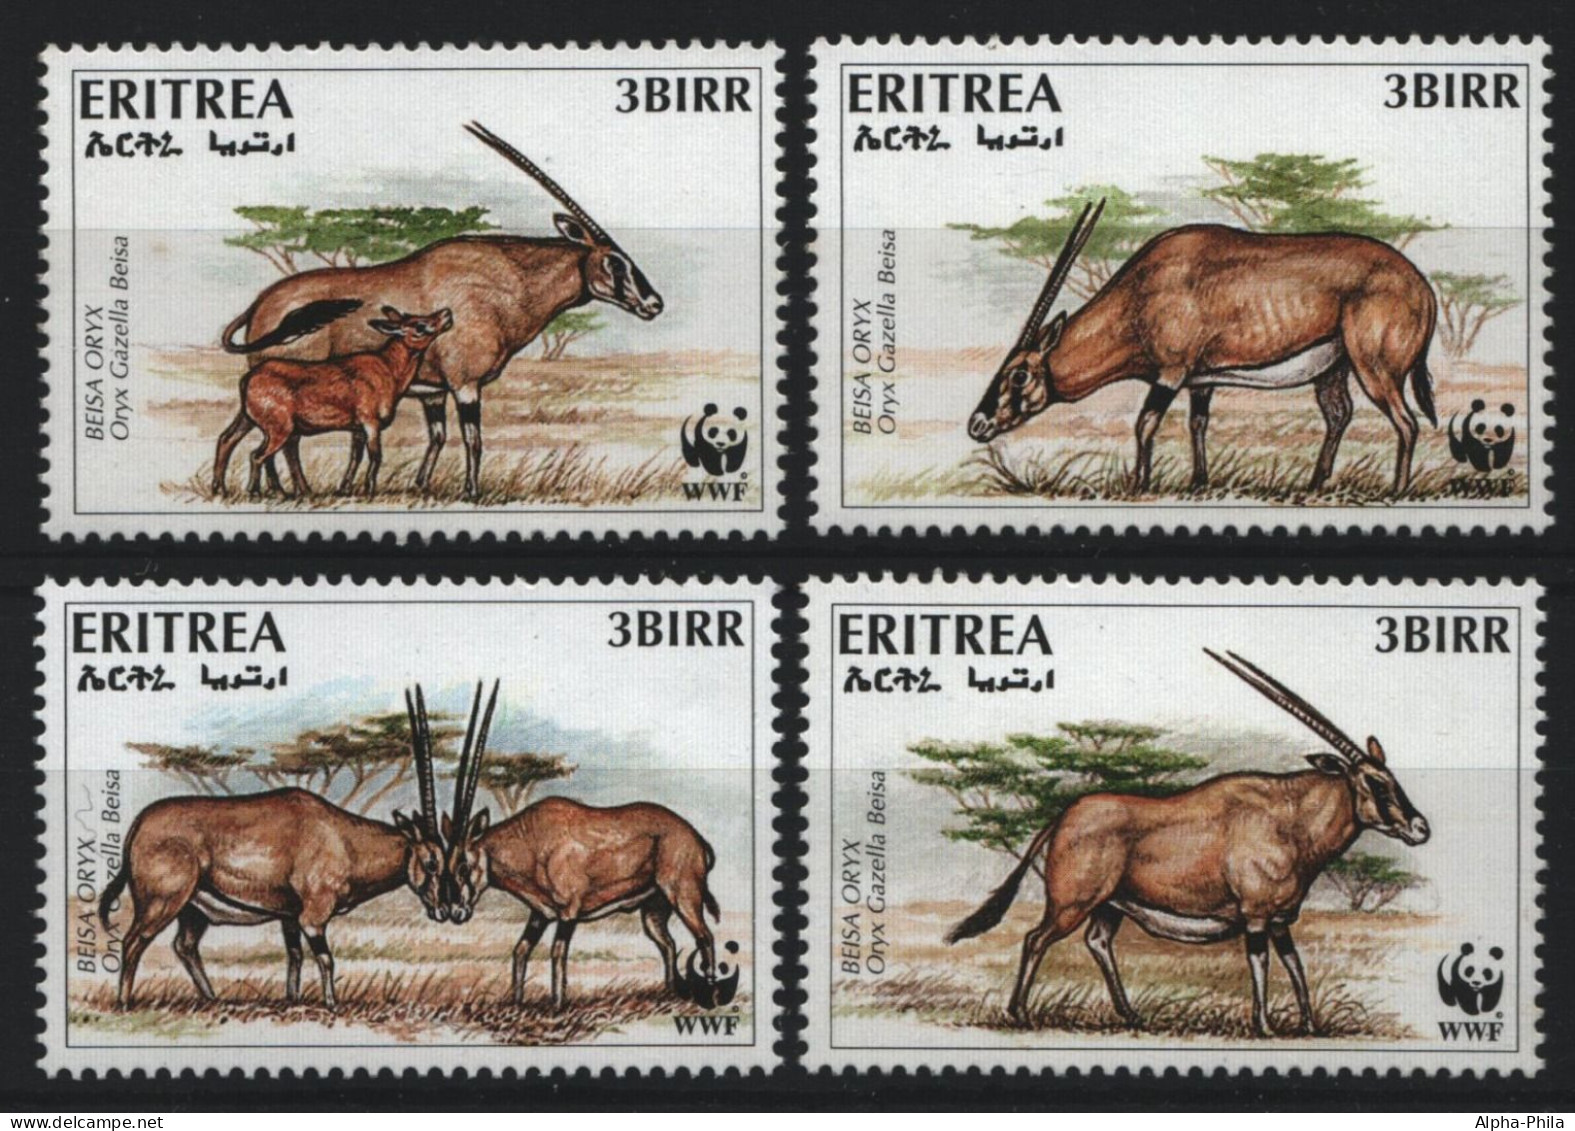 Eritrea 1996 - Mi-Nr. 87-90 ** - MNH - Wildtiere / Wild Animals - Erythrée